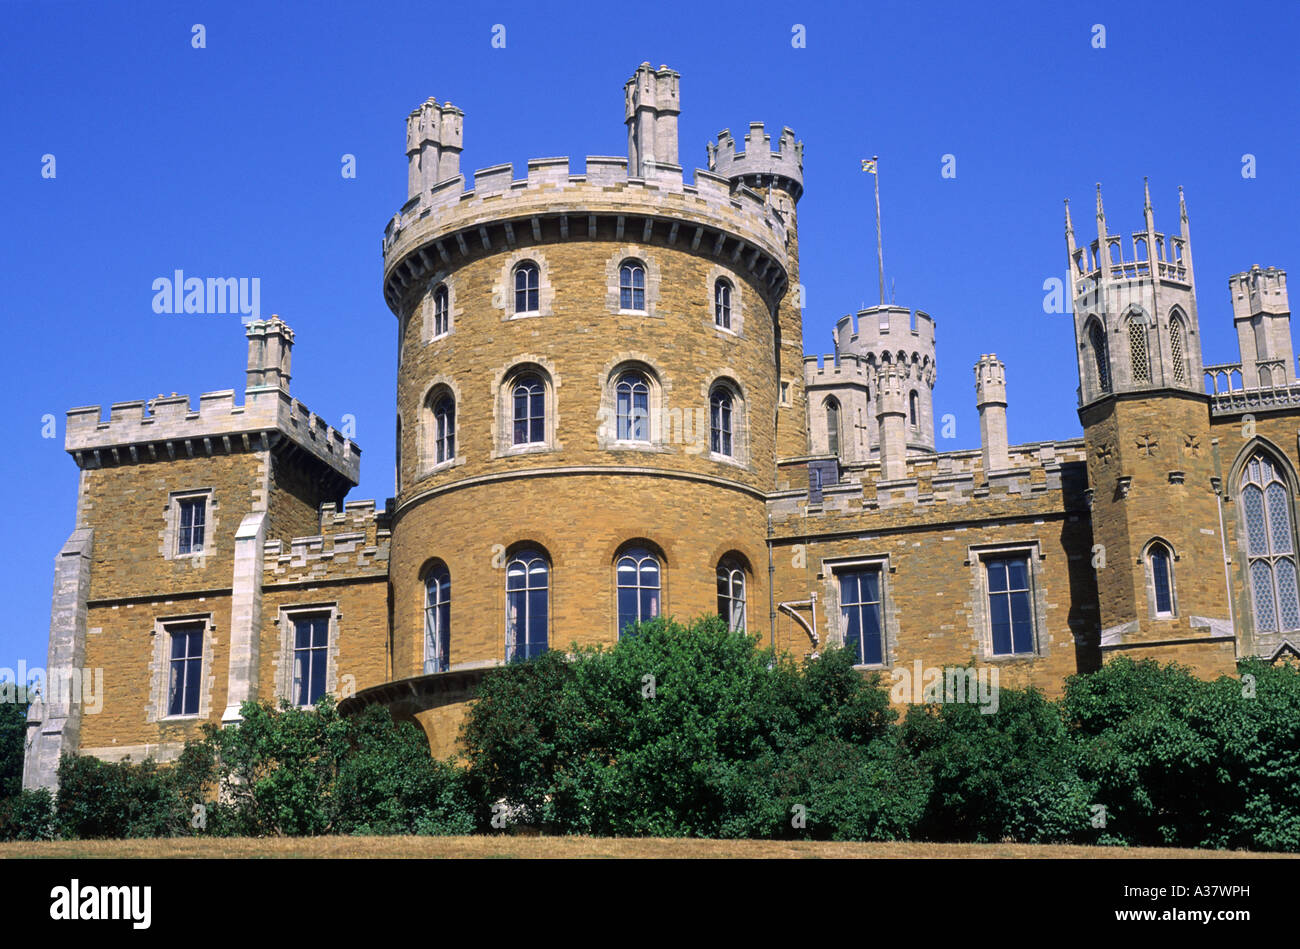 Belvoir Castle, Leicestershire, inglese ancestrale casa signorile, Inghilterra, Regno Unito, viaggi, turismo, architettura, romantico merlature Foto Stock